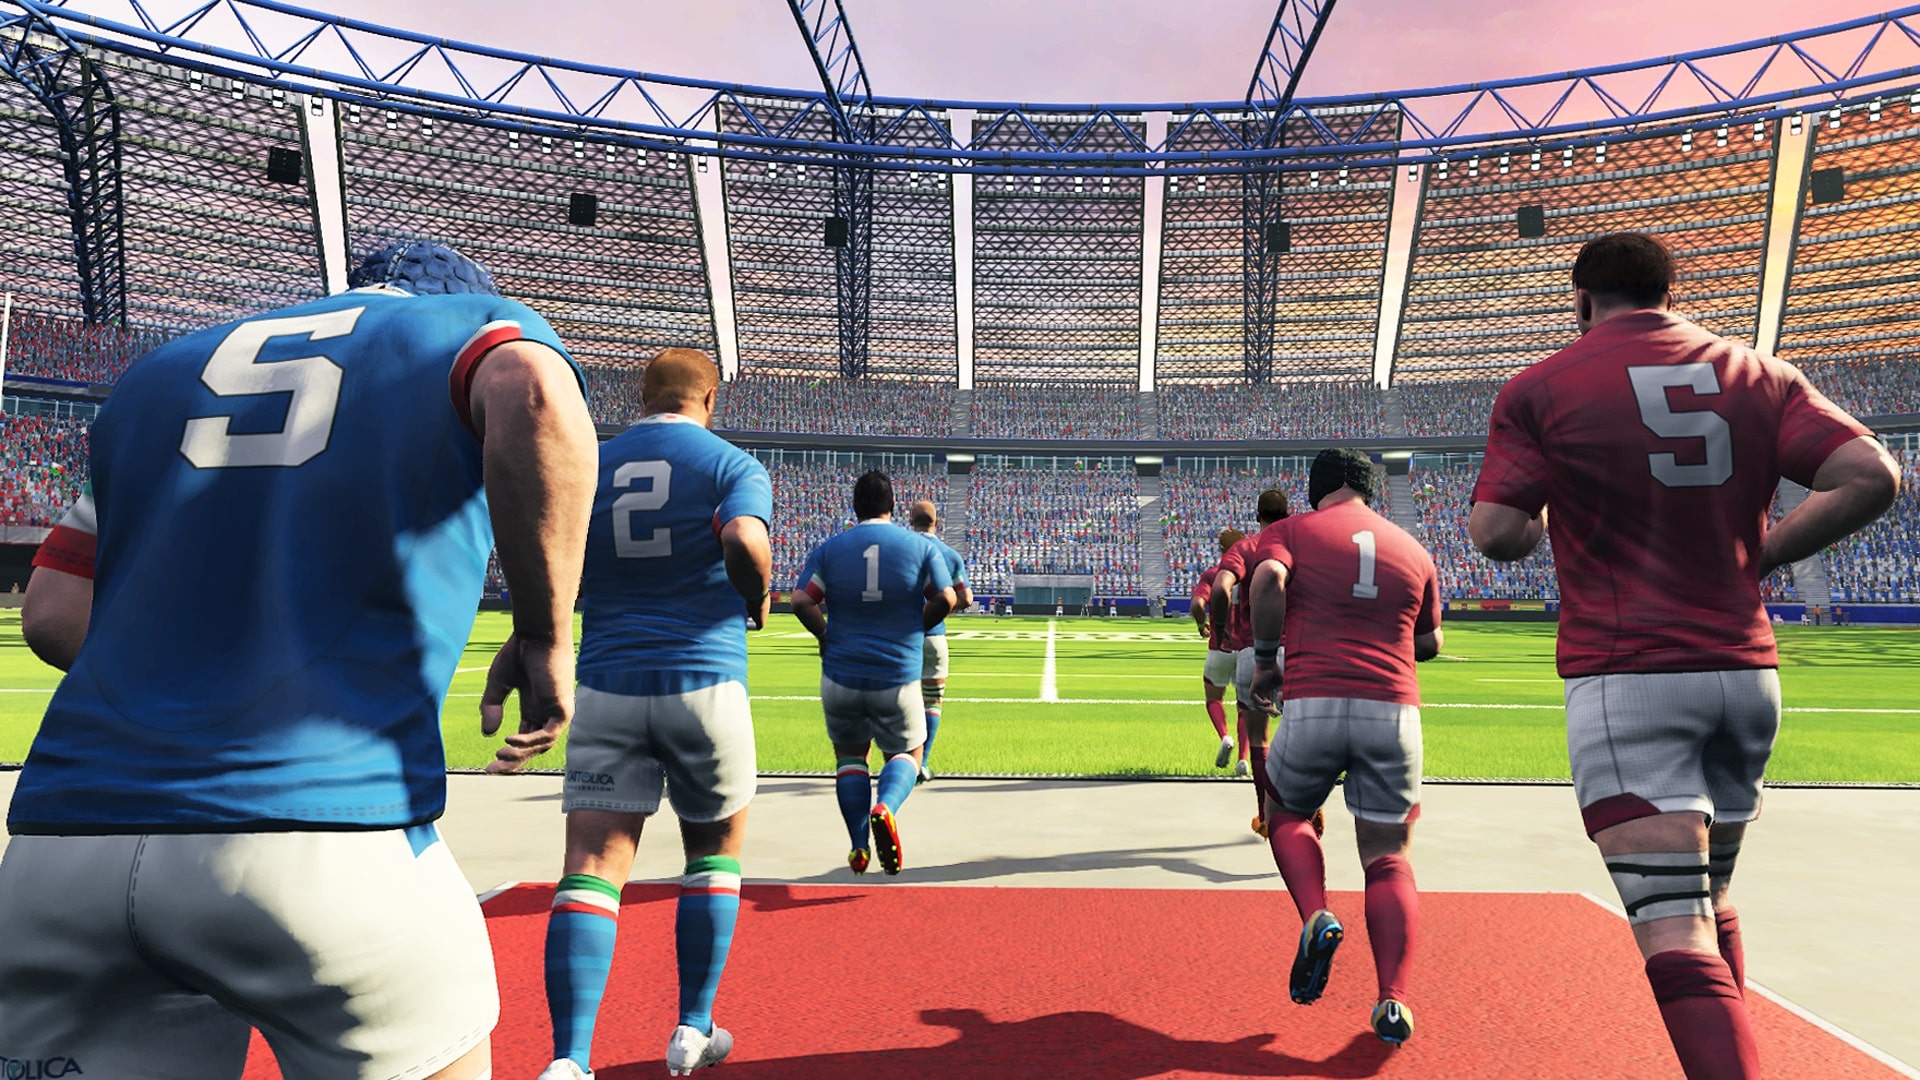 Rugby 20 - screenshot 4